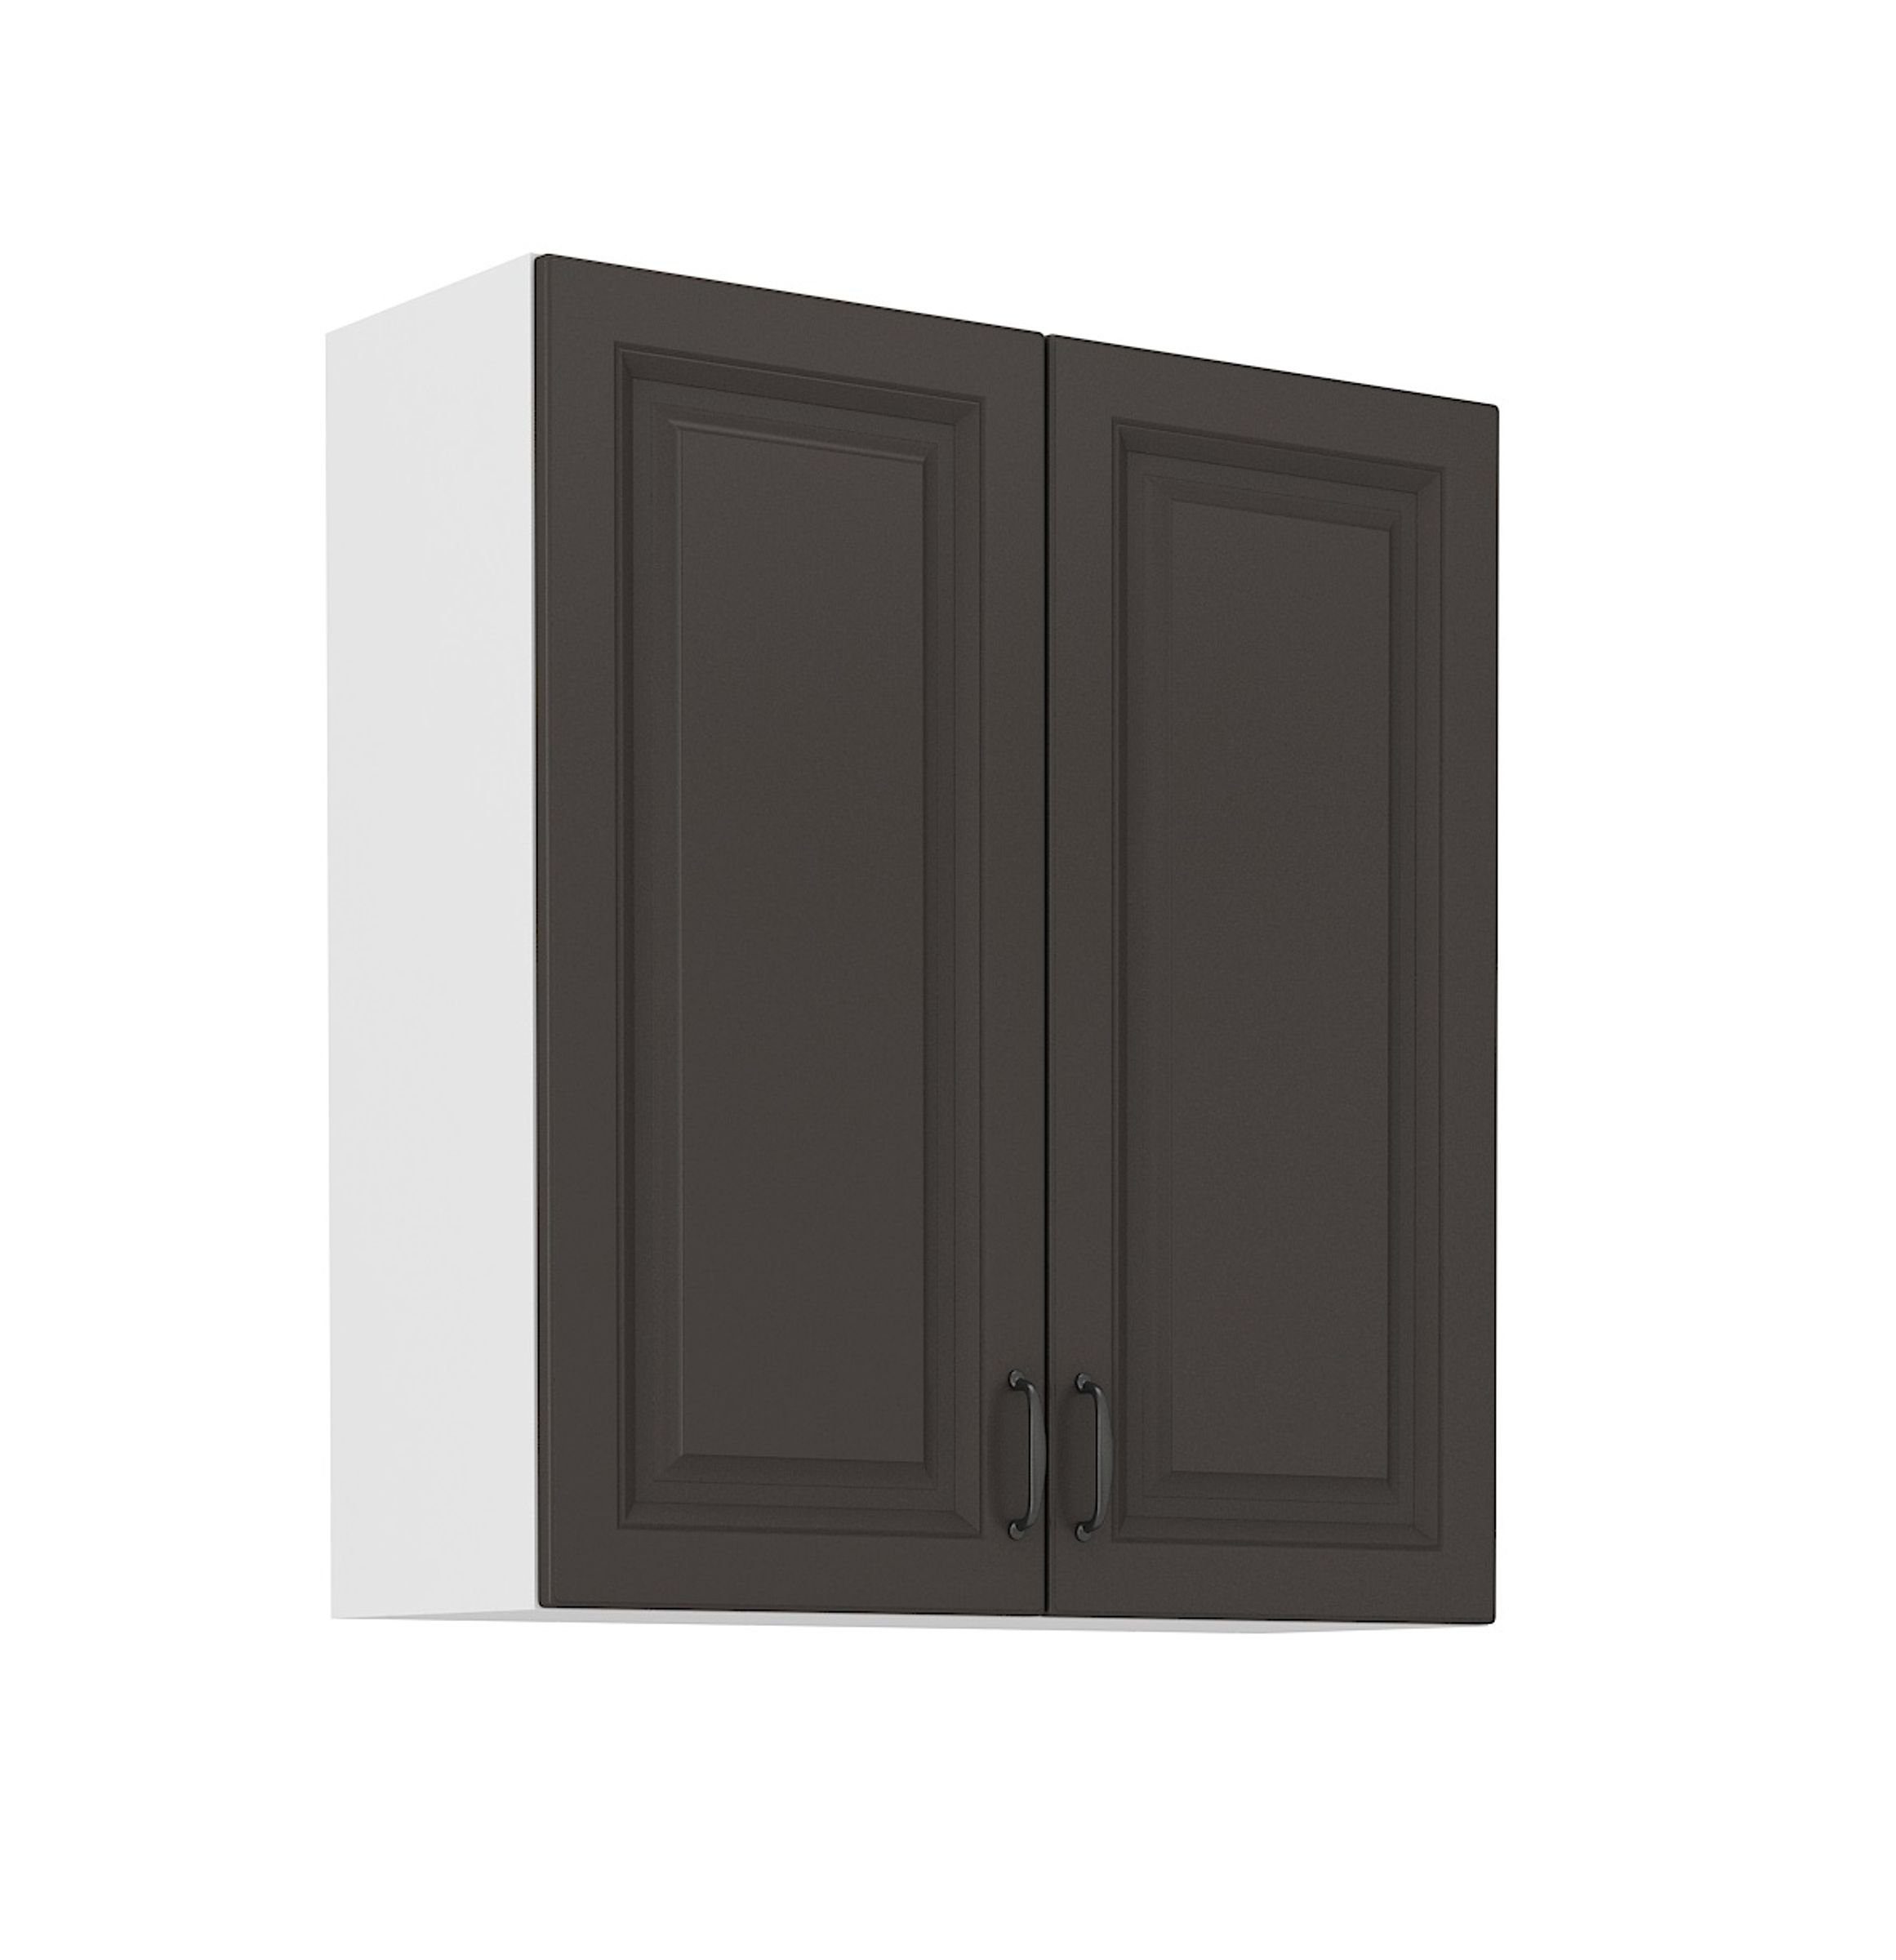 Küchenblock Küchen-Preisbombe Grau Küche Hängeschrank Stilo Einbauküche Küchenzeile Landhaus cm 80